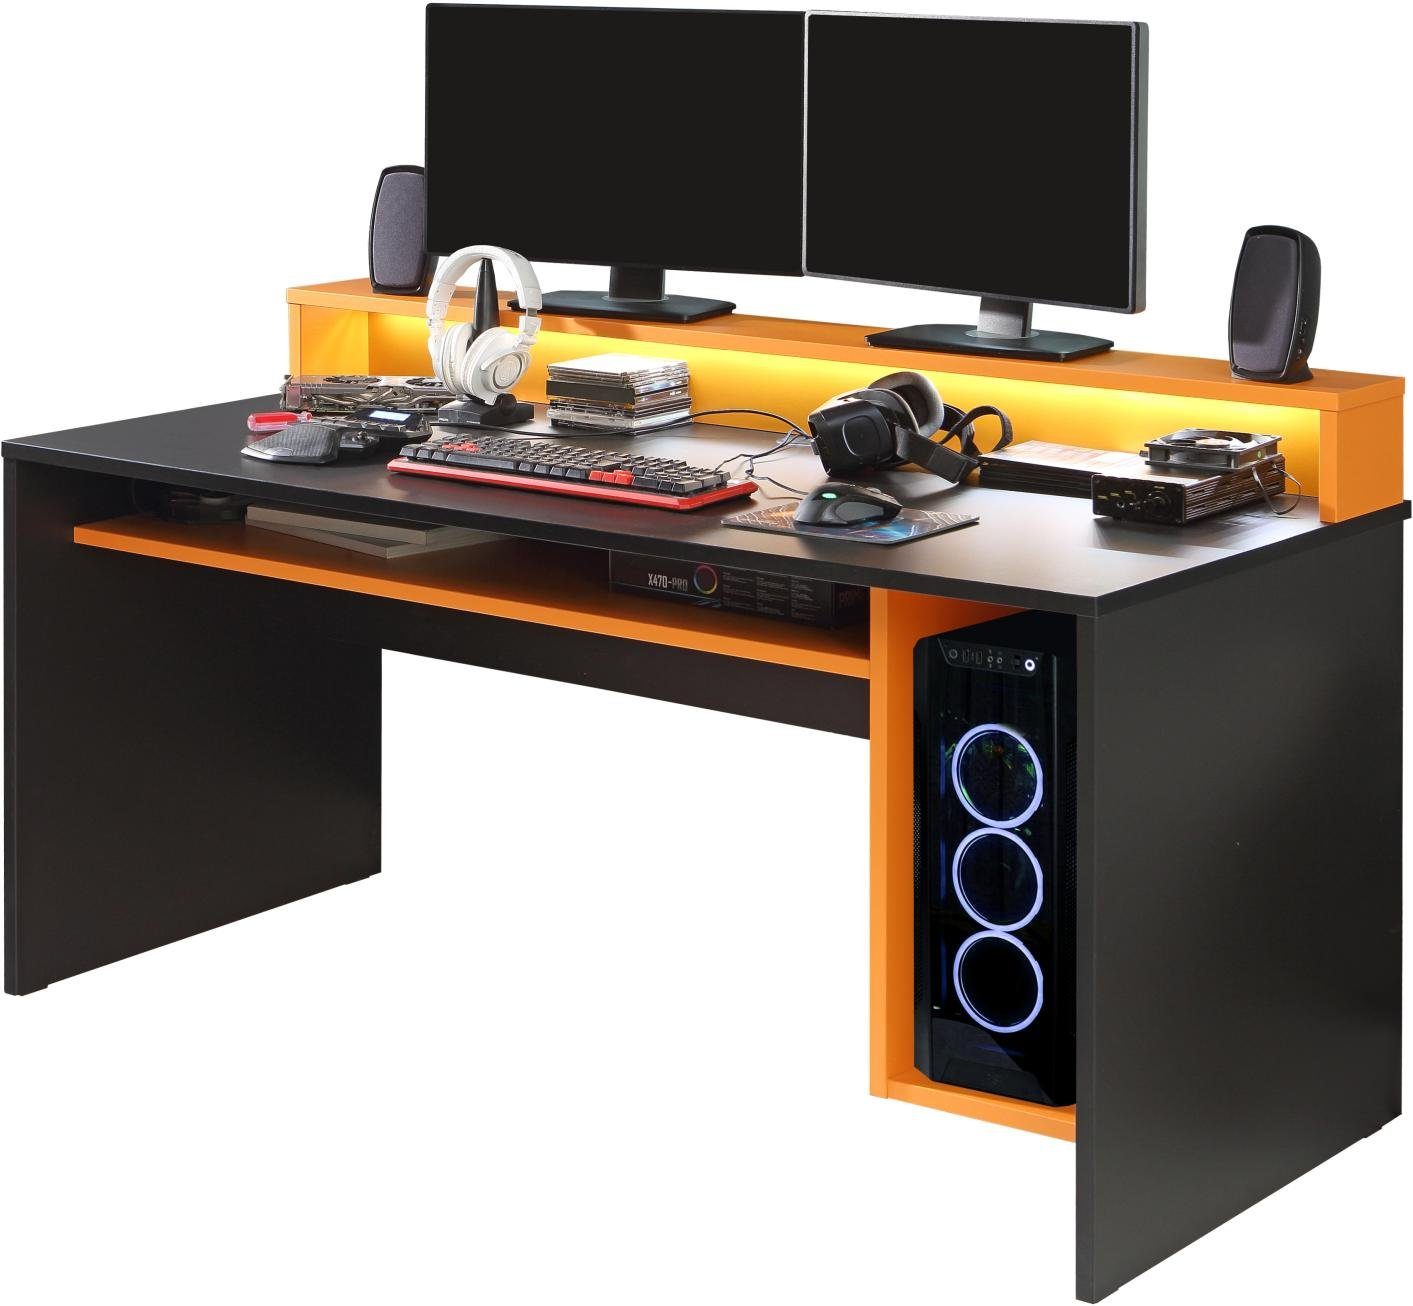 TEZAUR Gamingtisch 2B Tisch Black mit Möbel Computertisch Orange Forte Beleuchtung Gaming